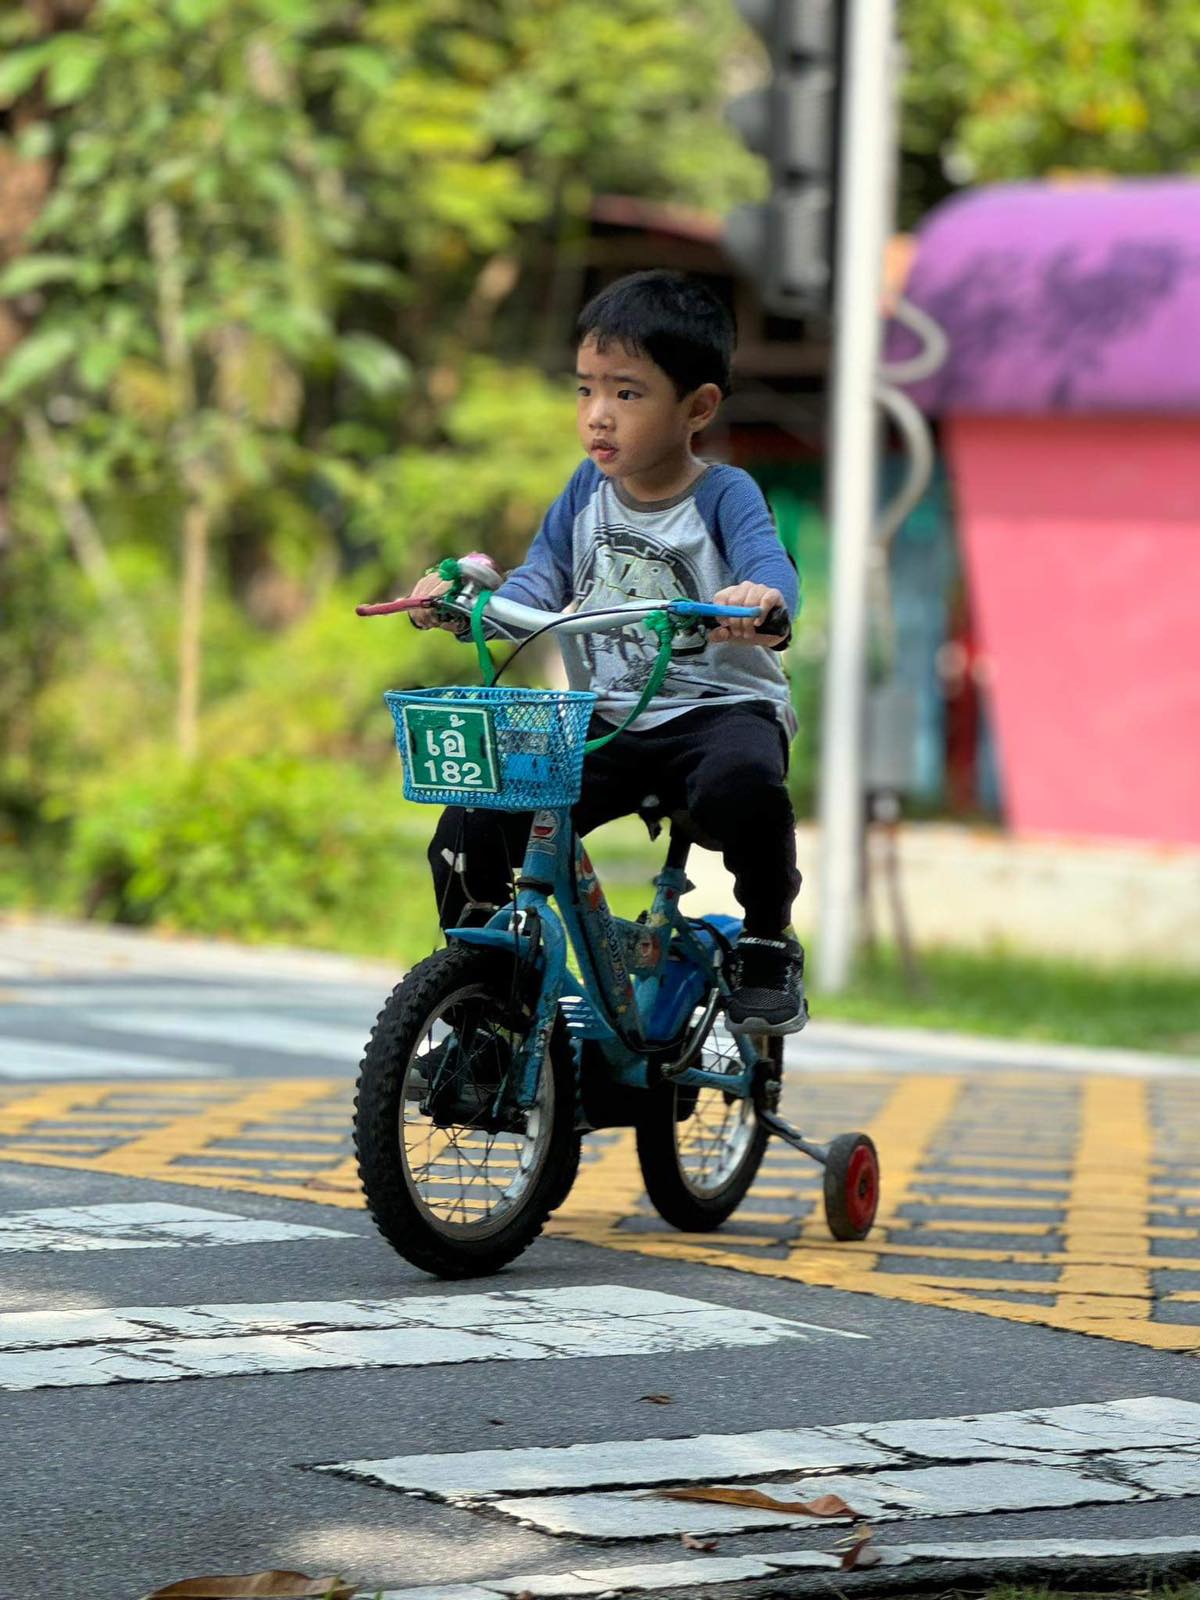 Little boy riding a bike